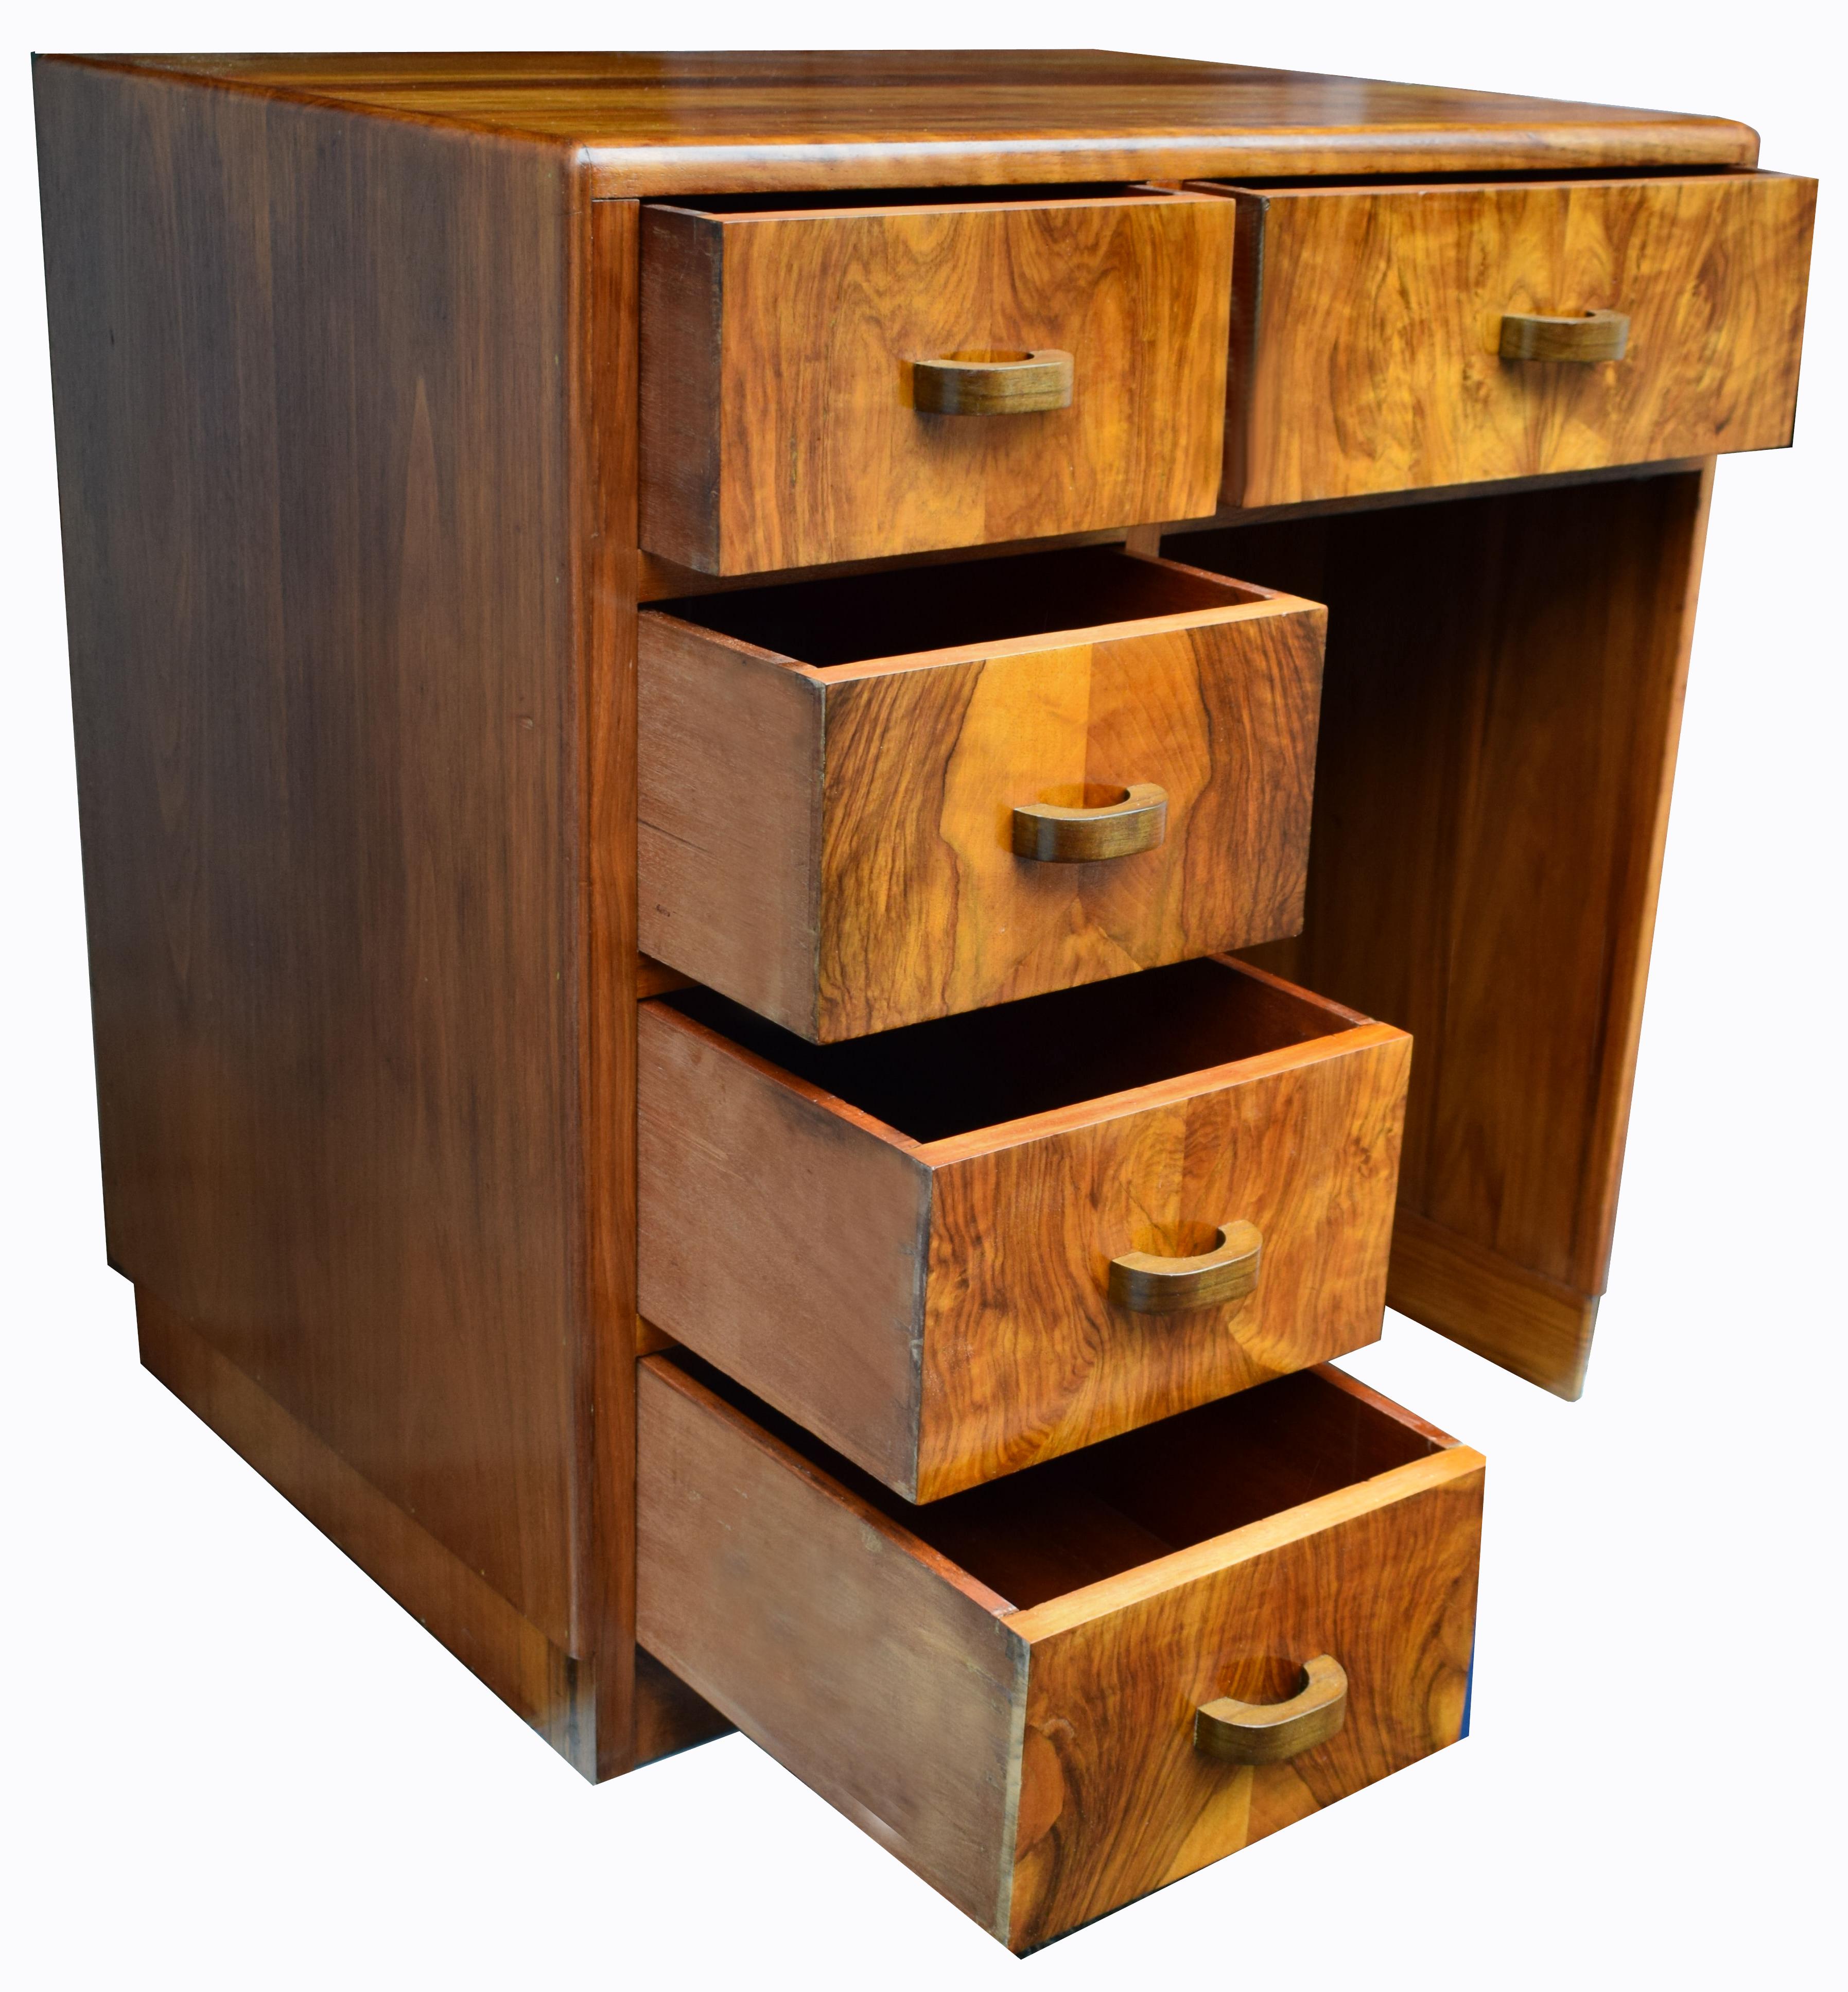 Wir bieten Ihnen diesen schönen und absolut originalen Nussbaumschreibtisch aus den 1930er Jahren an. Die kompakte Größe dieses kleinen Schreibtisches ist perfekt, wenn der verfügbare Platz begrenzt ist und eine Rolle spielt. Allgemein